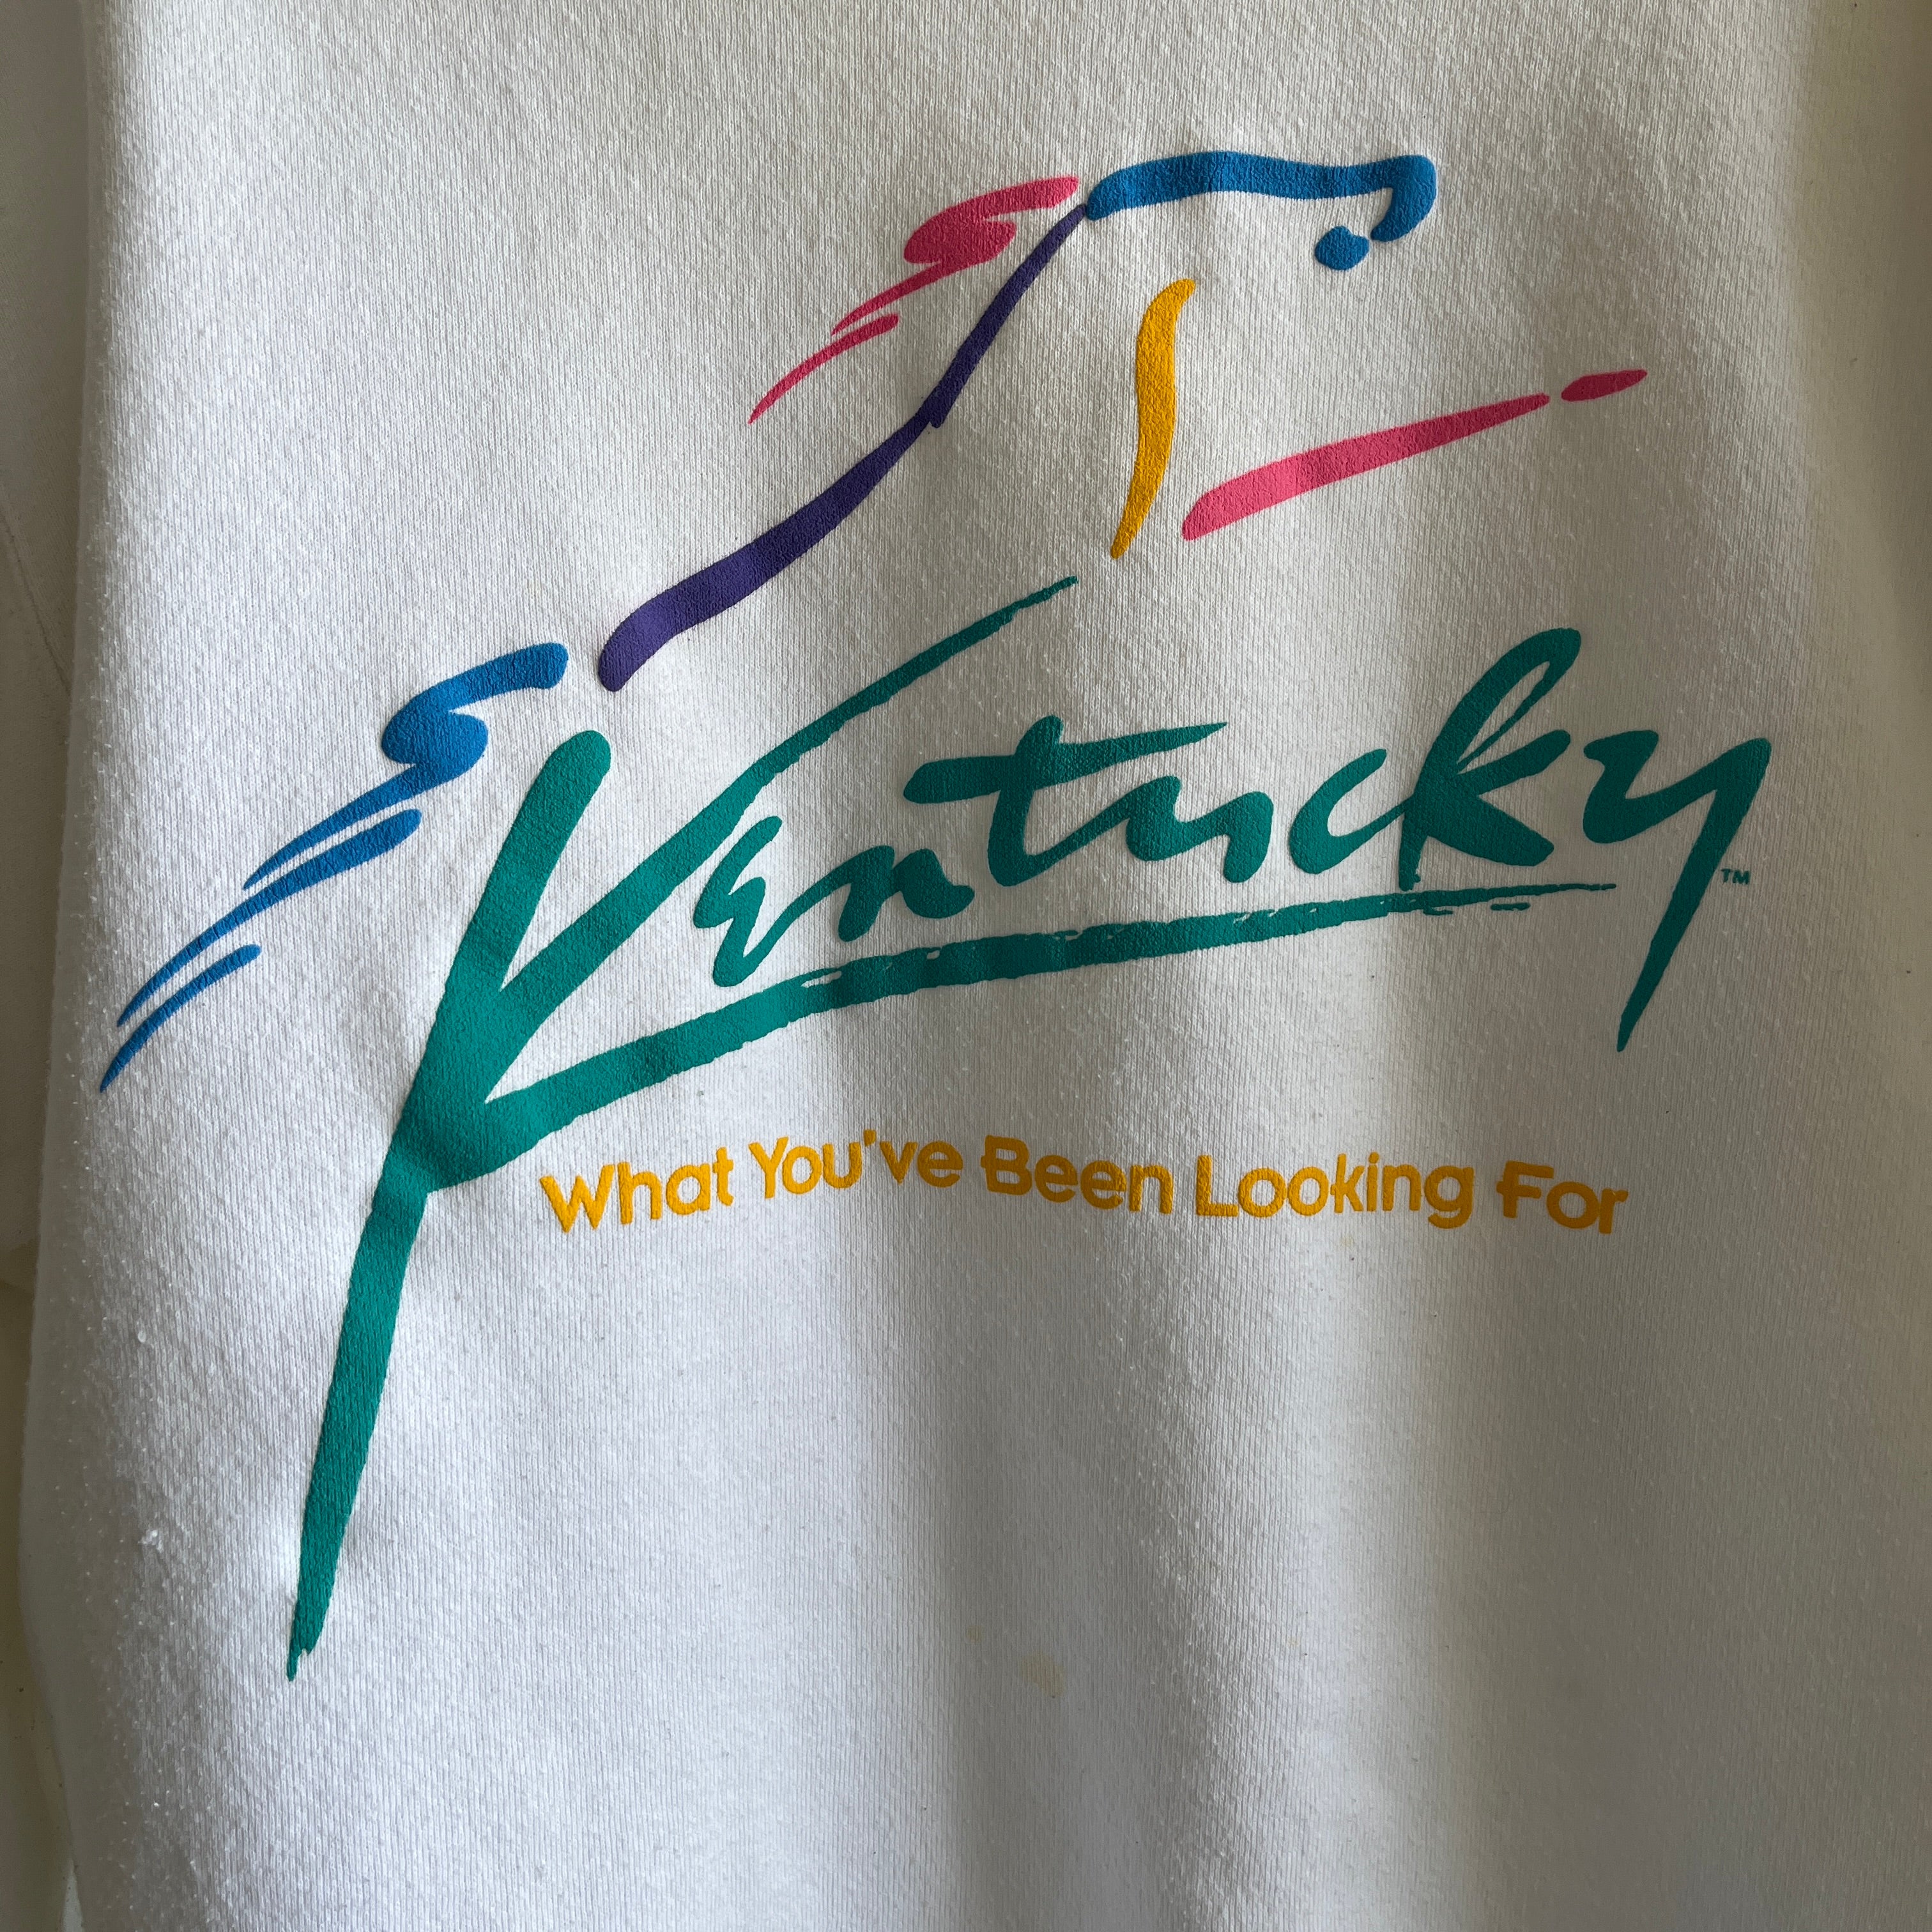 1980s Kentucky 